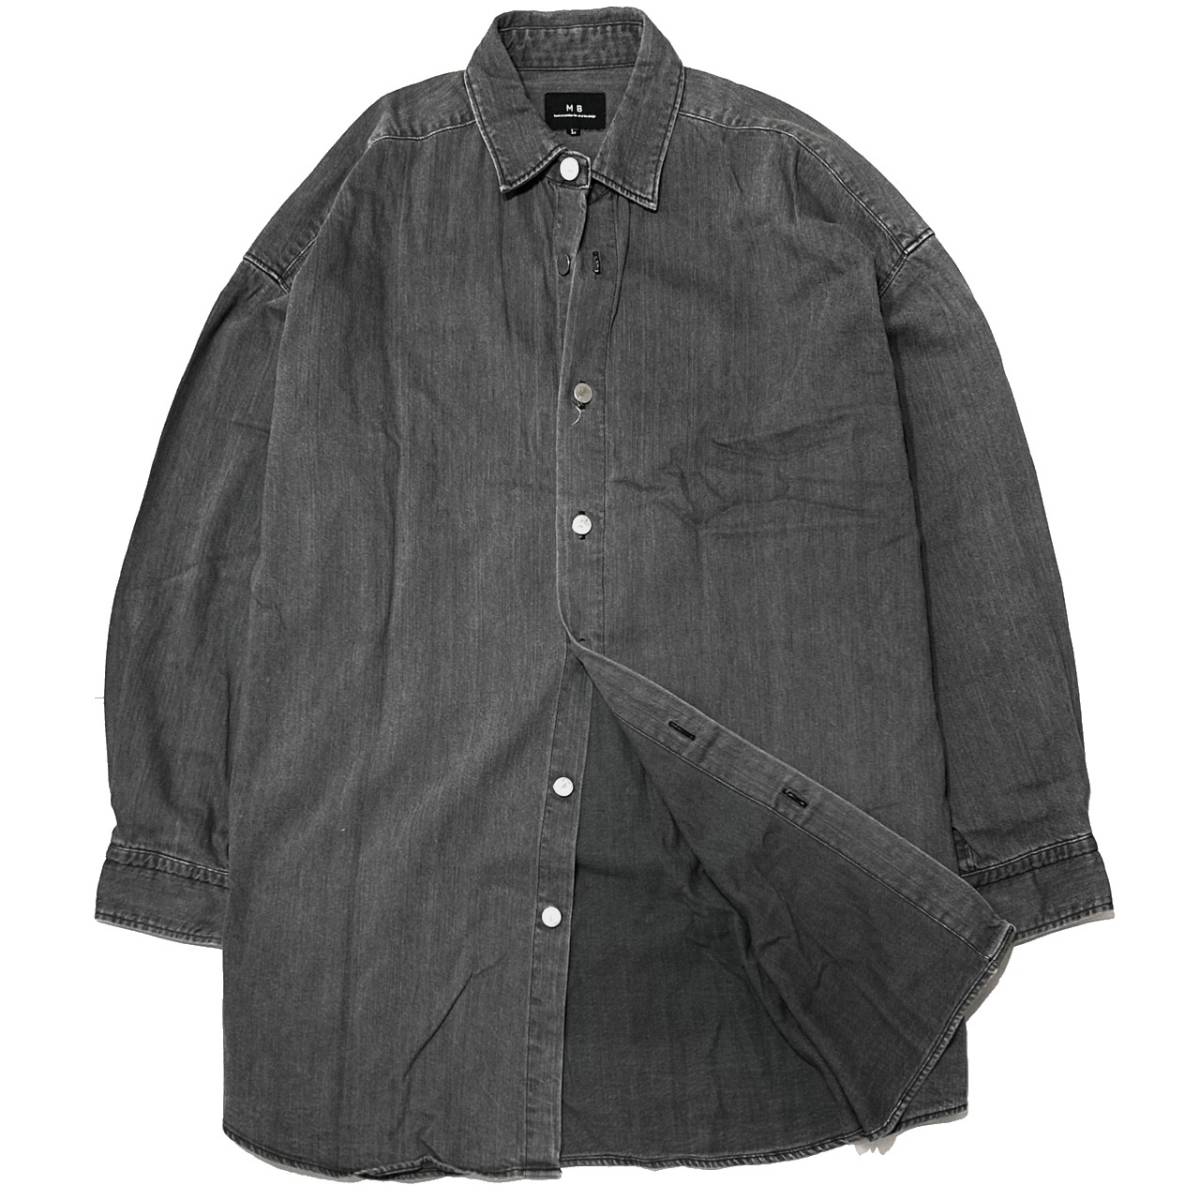 MB высокого уровня Denim рубашка пальто осветлитель L черный Attachment 